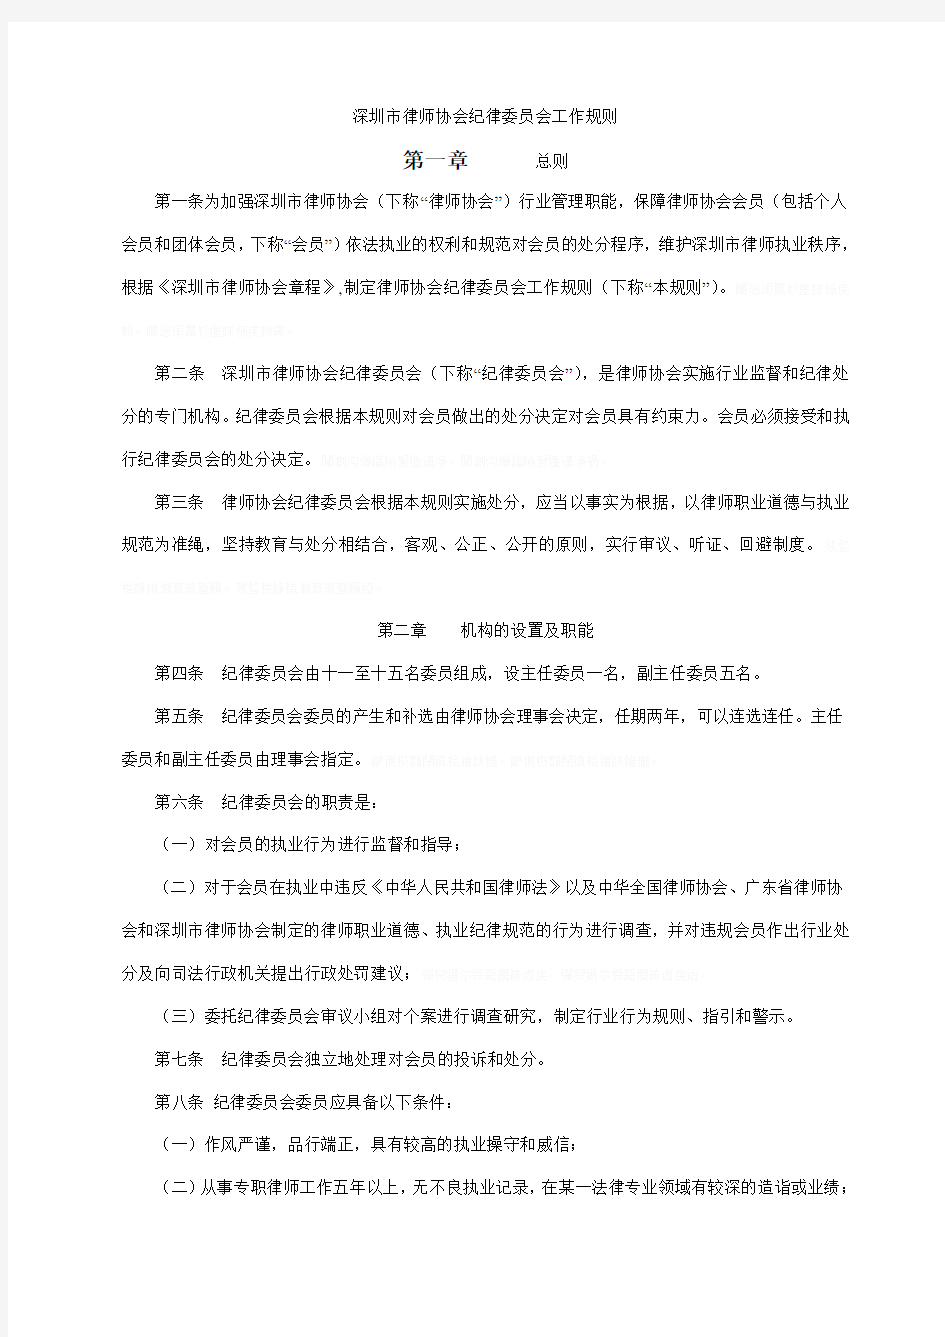 深圳市律师协会纪律委员会工作规则